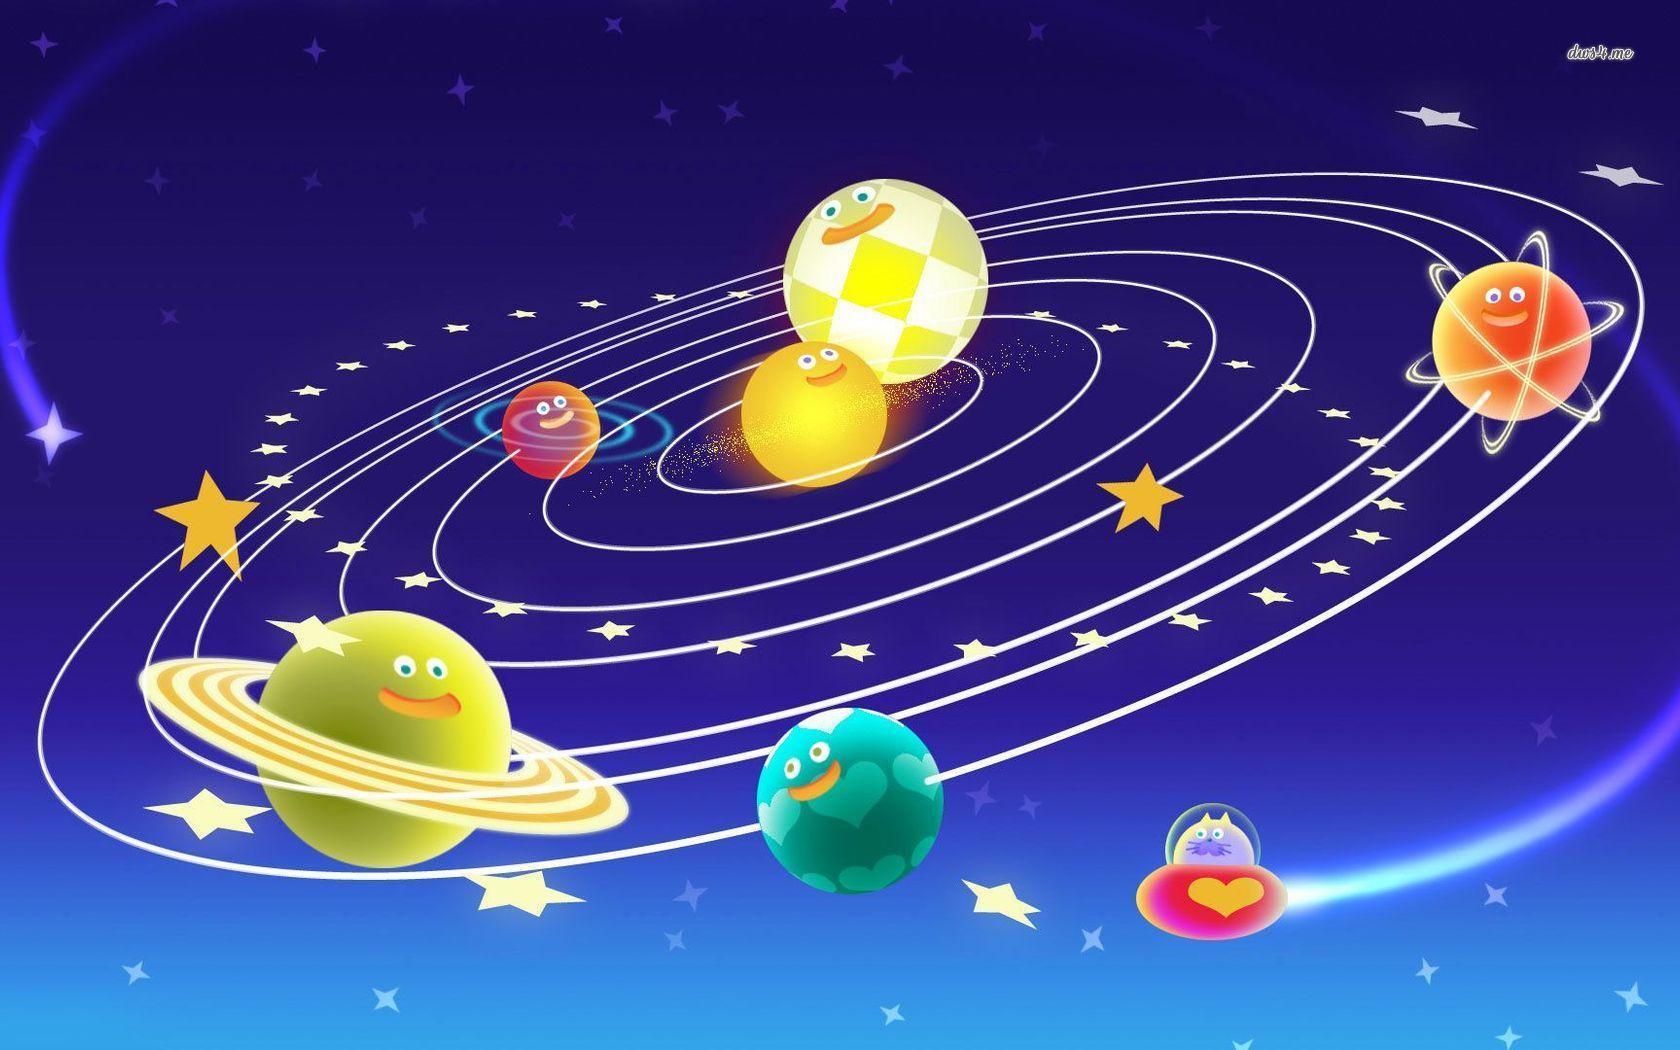 Cute Solar System wallpaper Art wallpaper - #